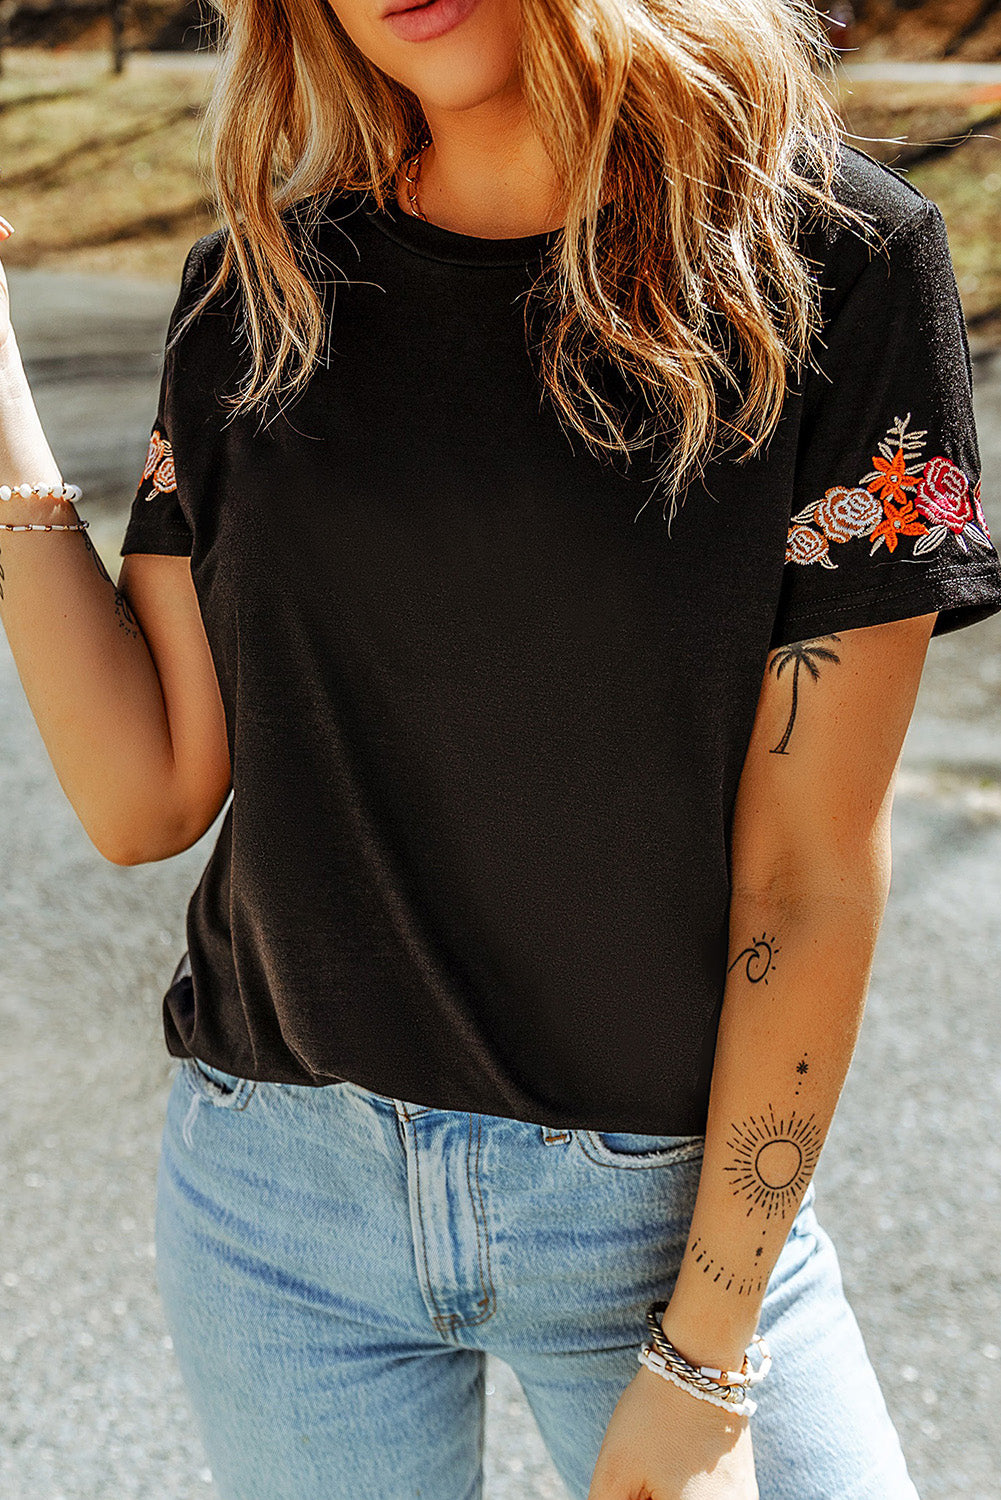 Črna majica s kratkimi rokavi in ​​okroglim ovratnikom, vezenim cvetjem